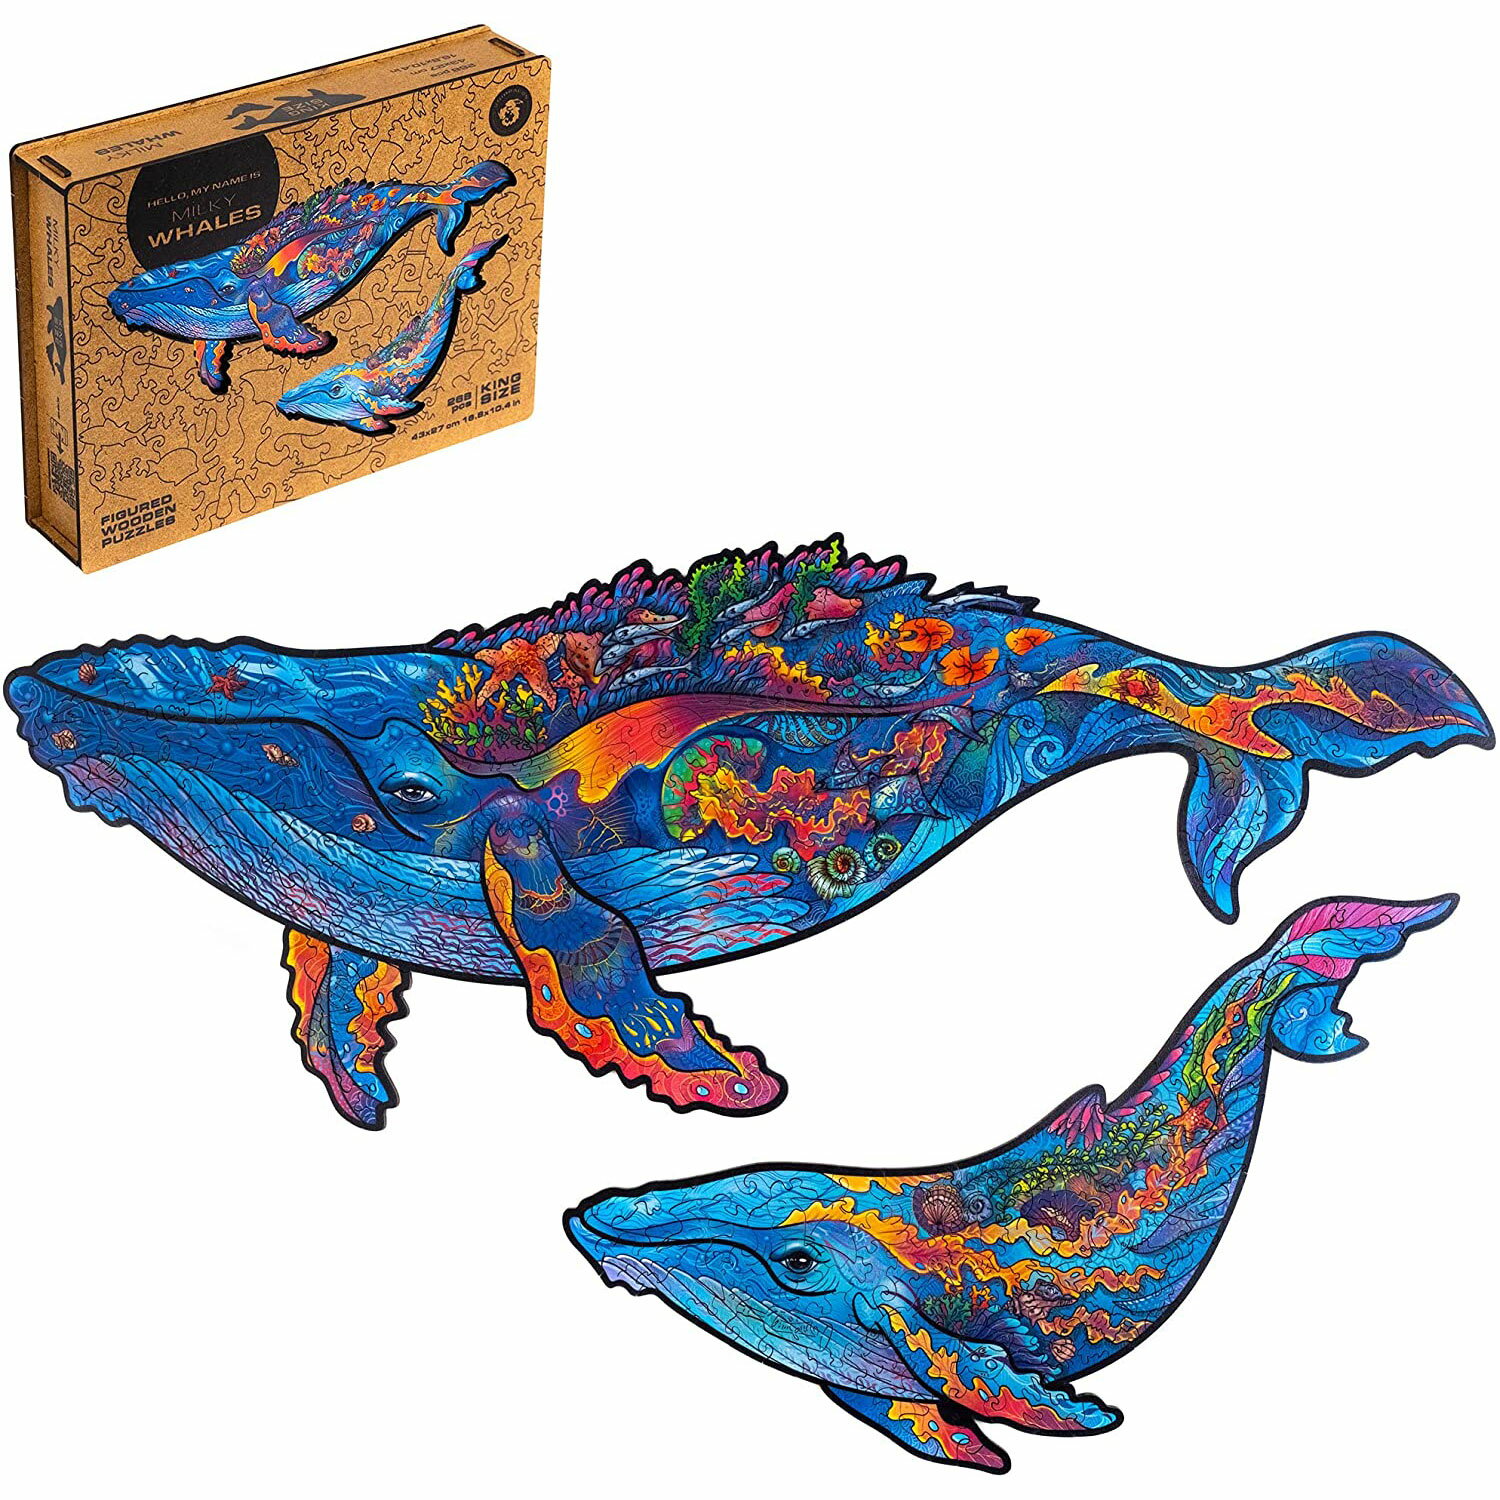 80.UNIDRAGON パズル 大人 木製パズル 木製 ジグソー 子供 最高 ギフト ユニーク 形 プレゼント ジグソーパズル ピース チャーミング 可愛い 綺麗 かわいい クジラ ミルキー ホエールズ 木製フィギュアパズル 43 x 27 cm 268 ピース キング サイズ